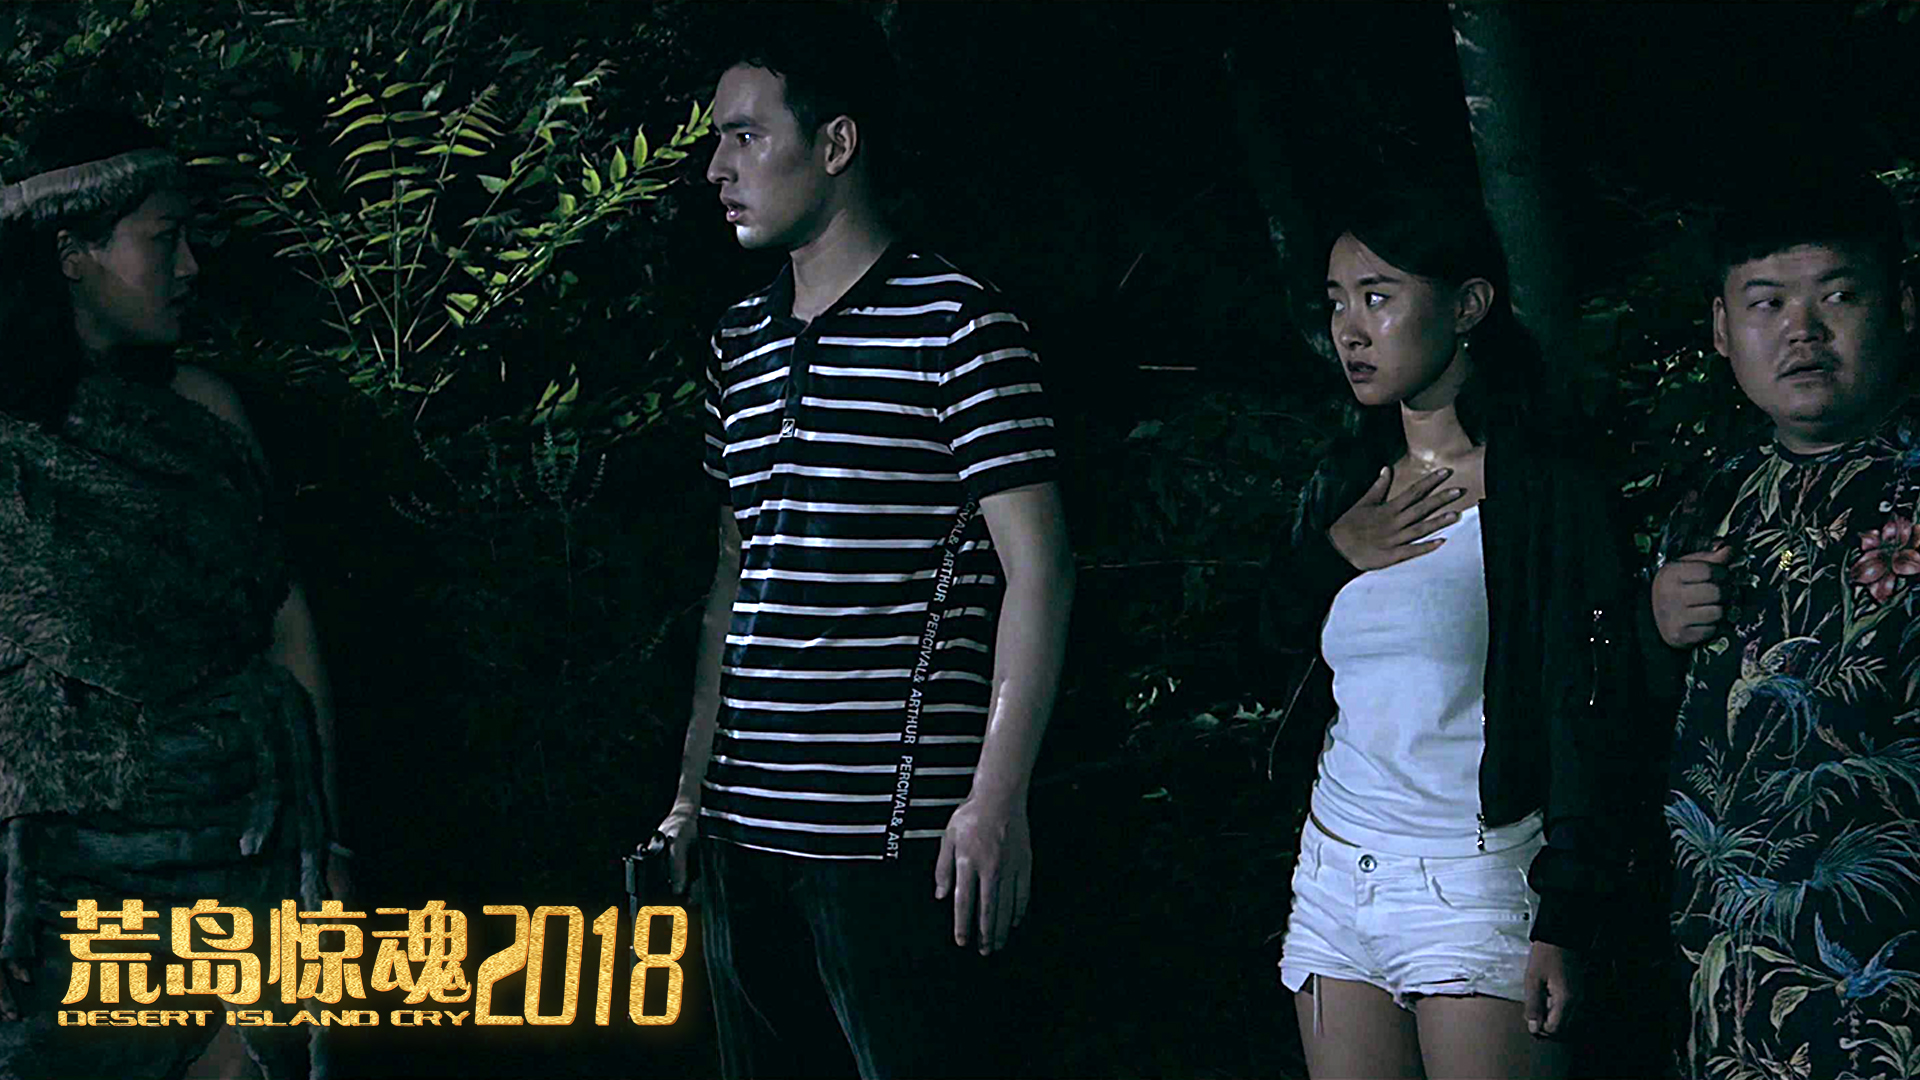 电影《荒岛惊魂2018》定档9月19日腾讯视频独家上映